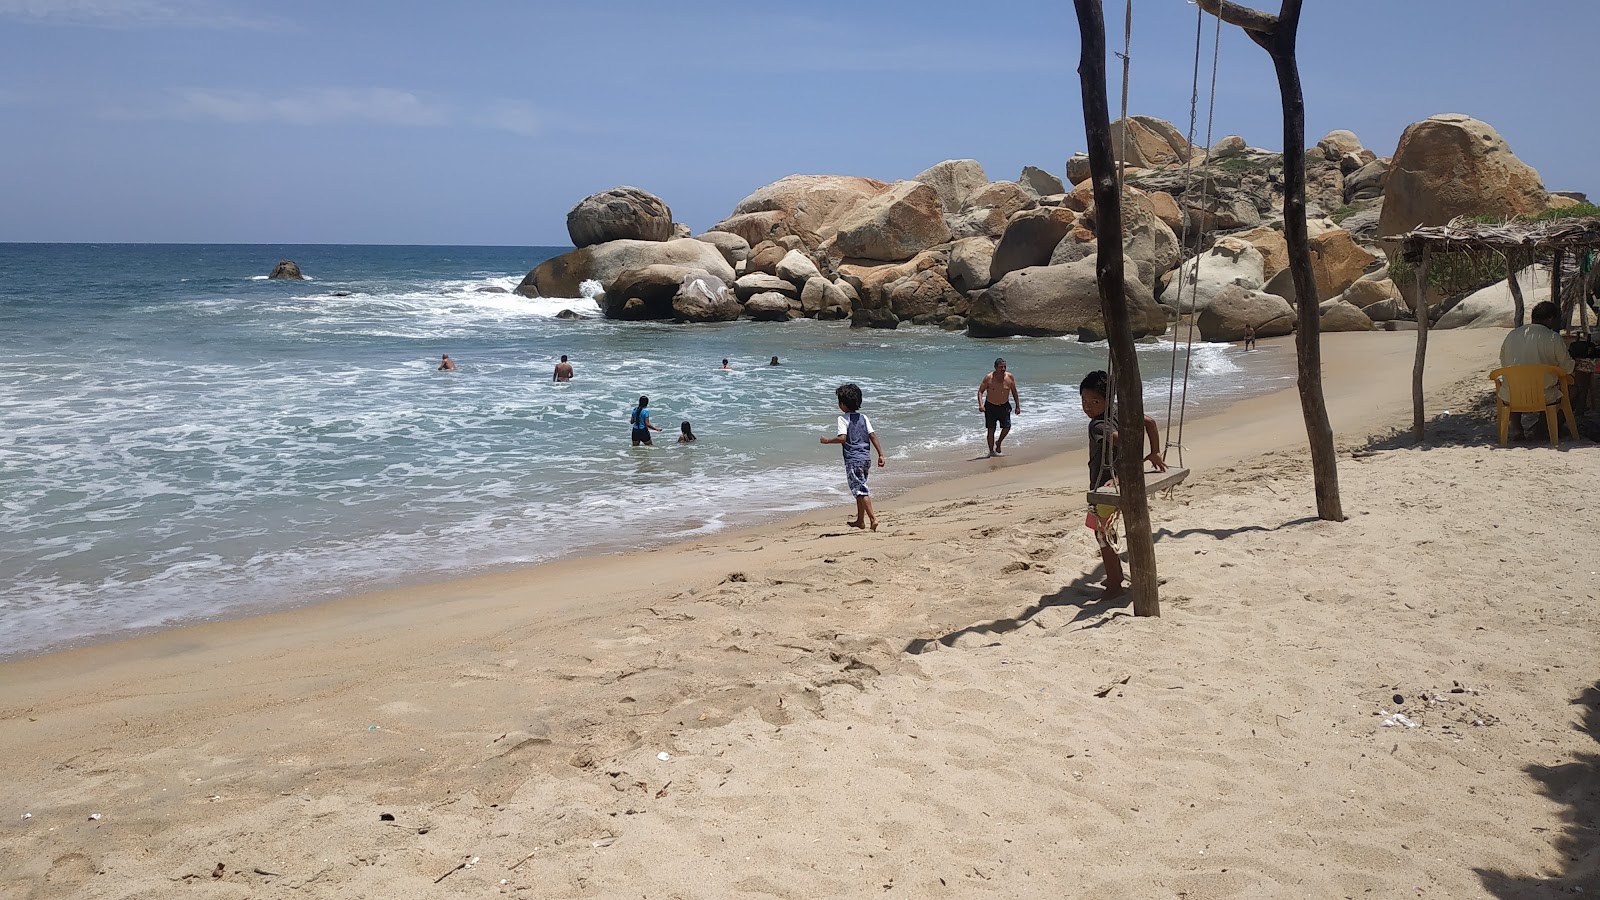 Playa Las Gaviotas'in fotoğrafı çok temiz temizlik seviyesi ile